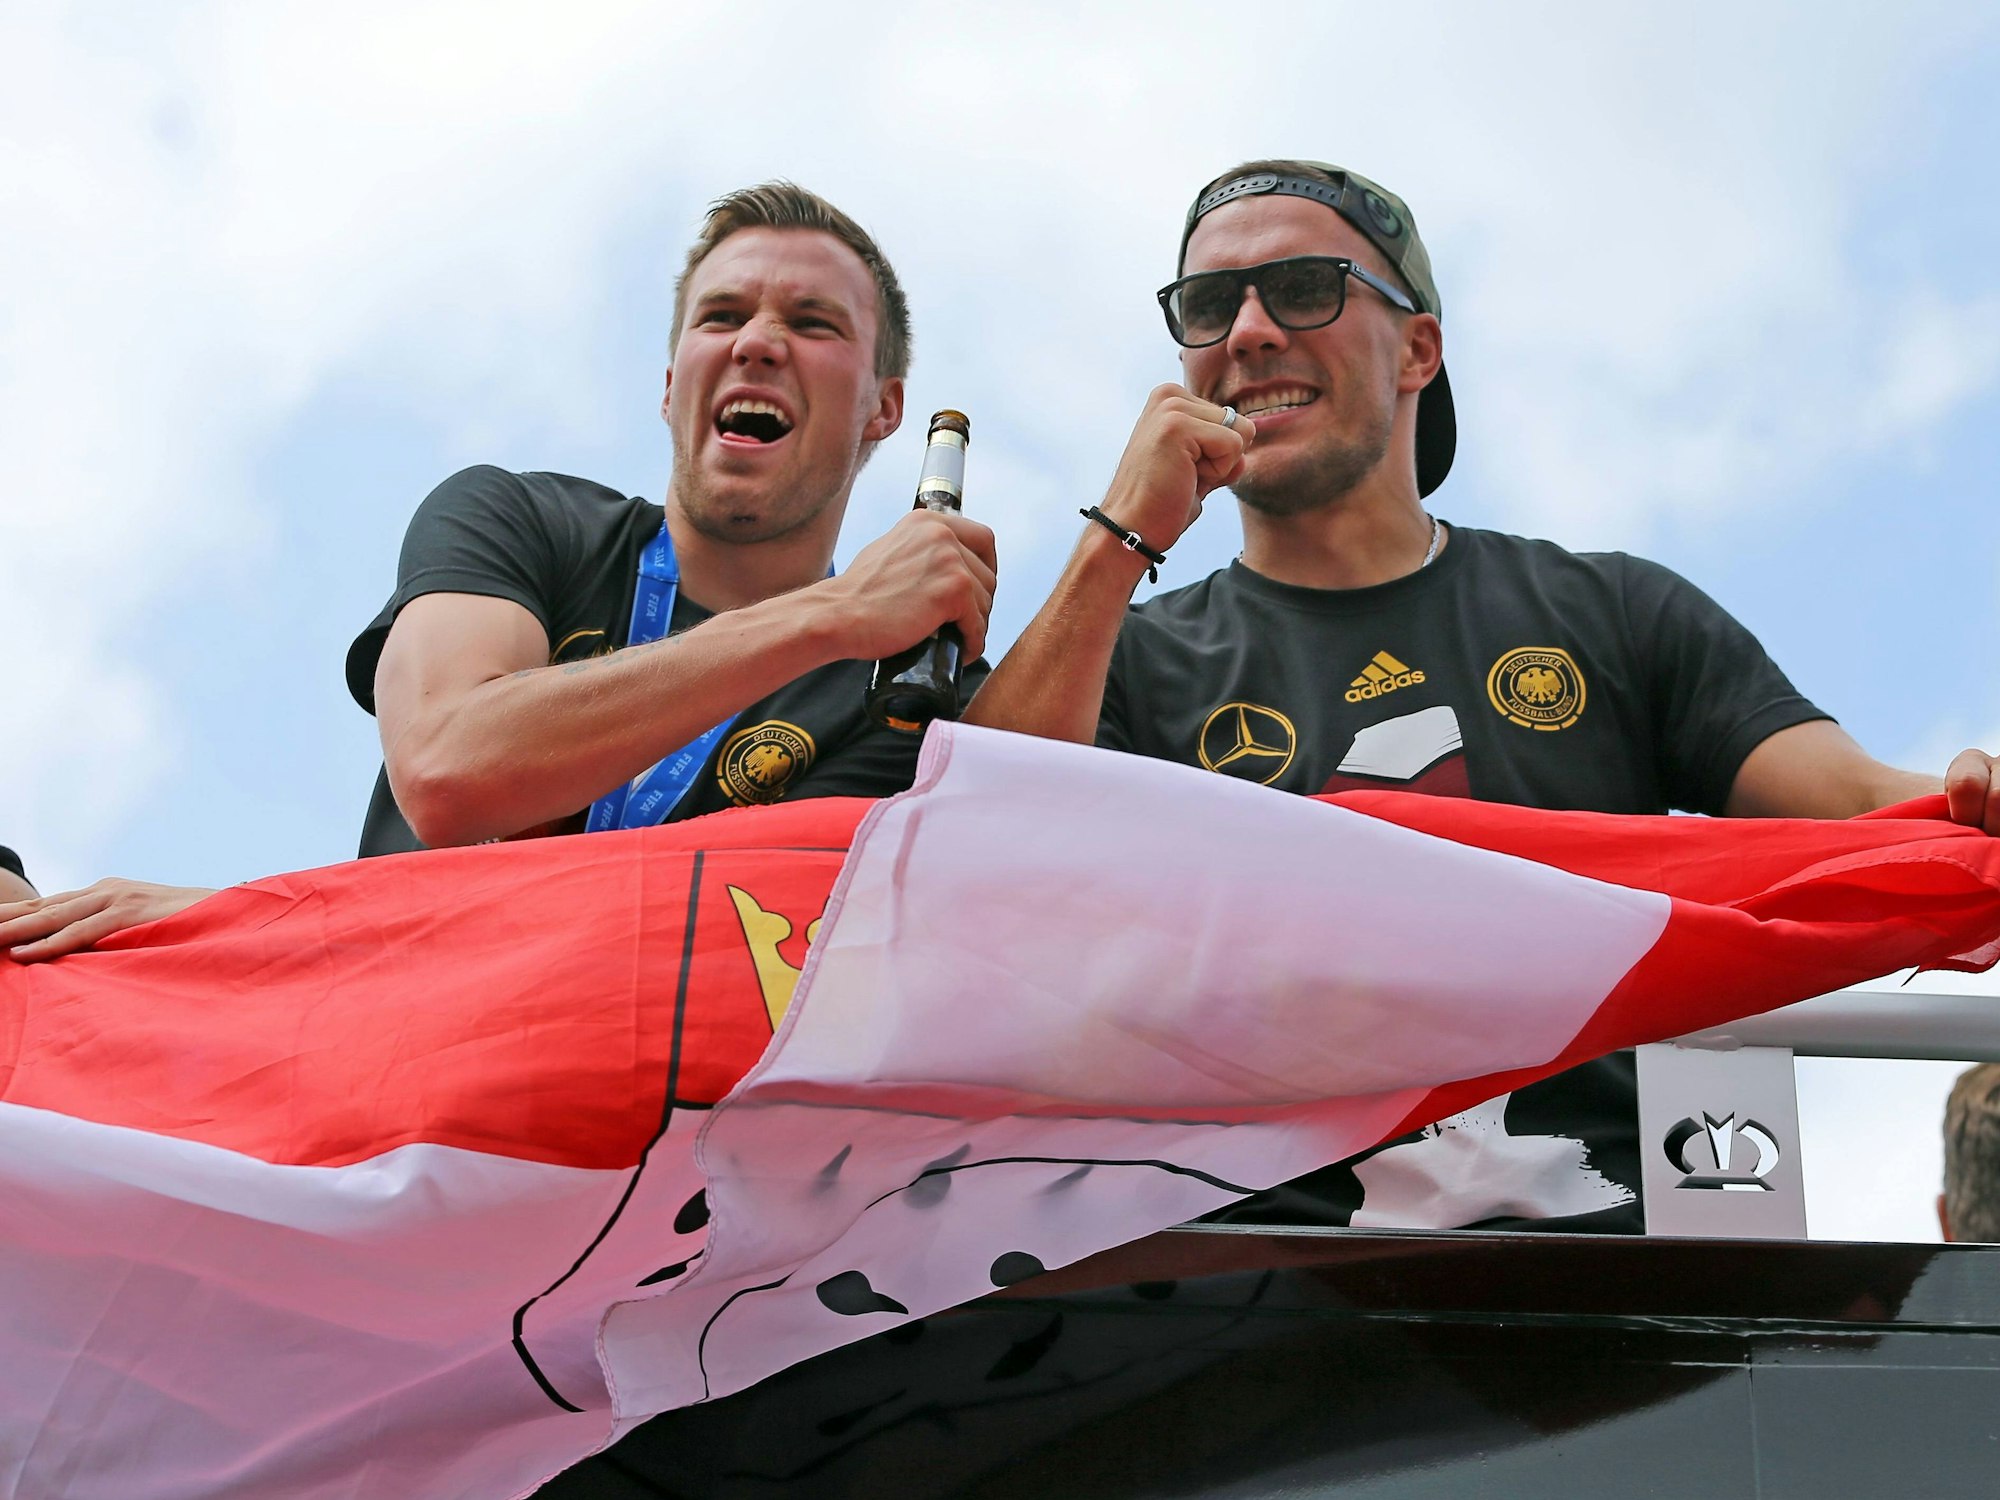 Kevin Großkreutz, links, rechts Lukas Podolski, auf dem Wagen nach der Fußball-Weltmeisterschaft 2014.